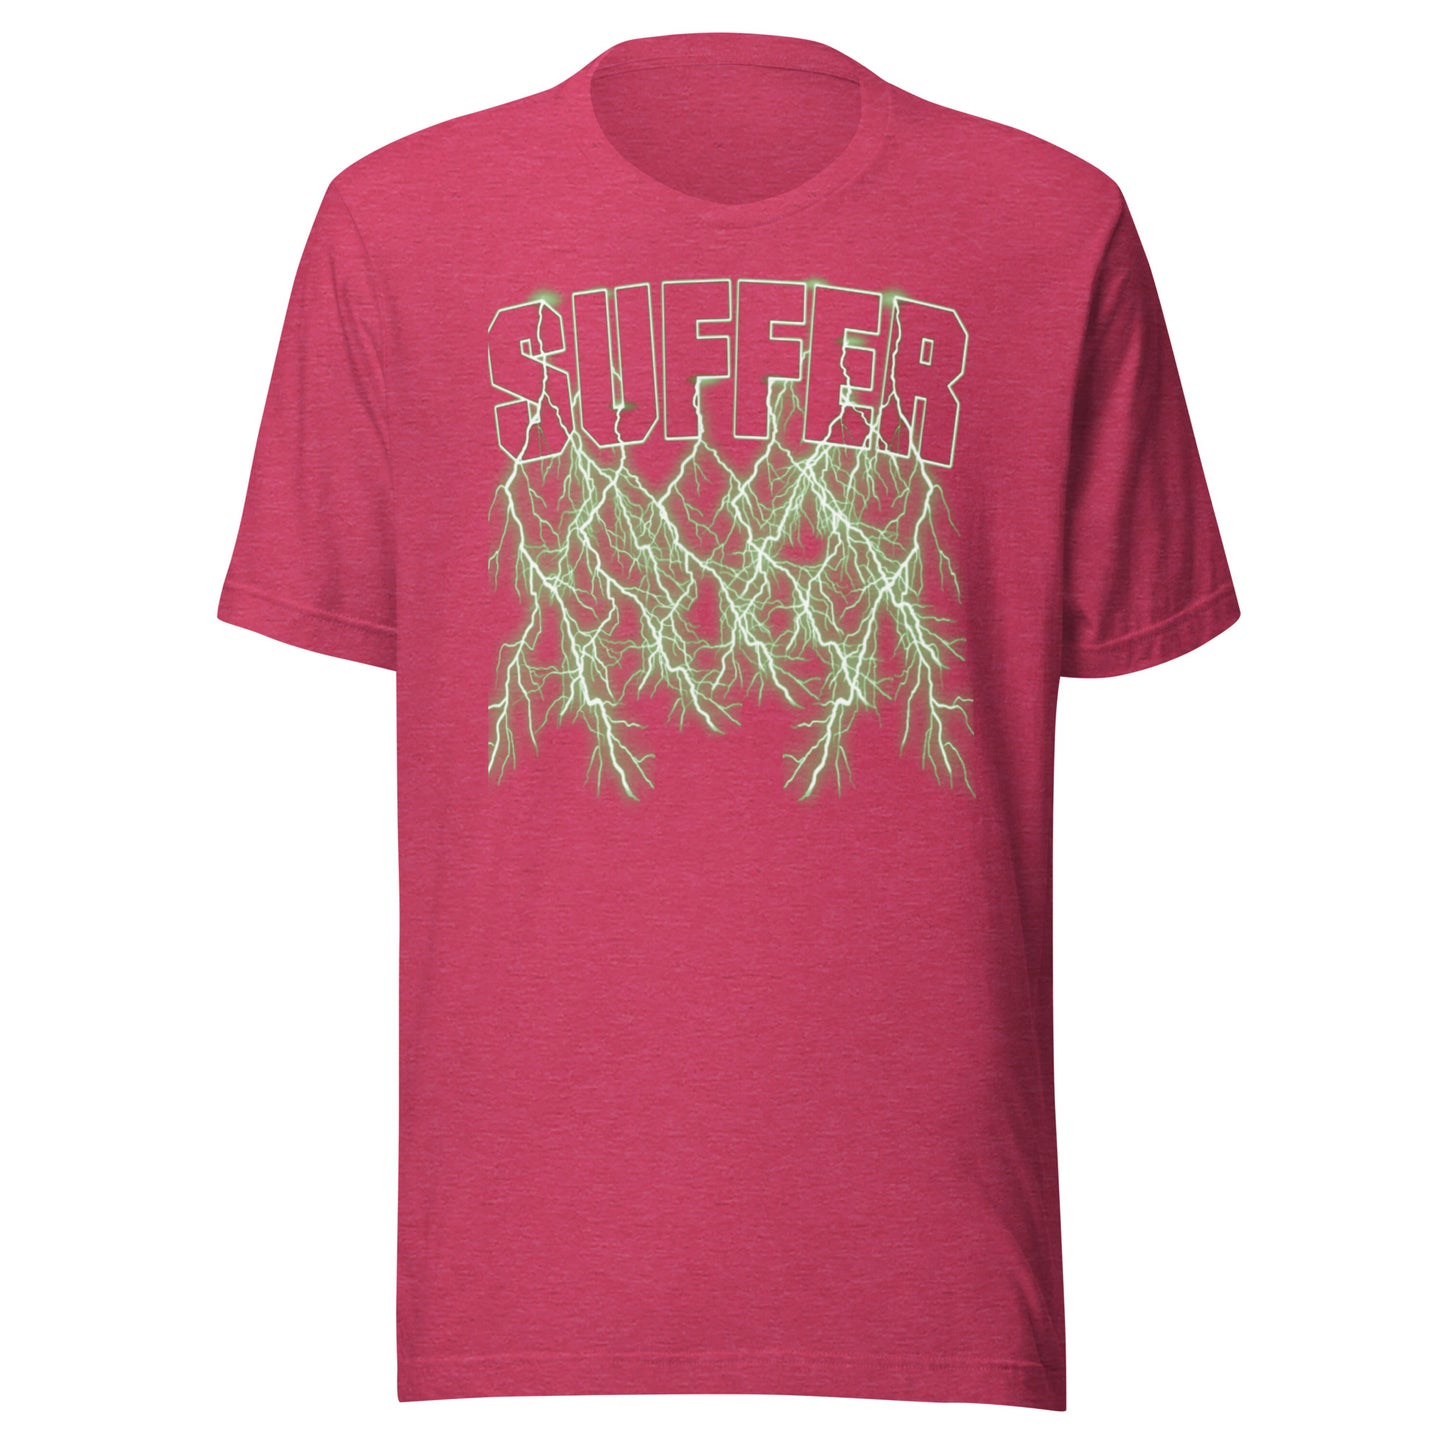 Green Suffer Lightning T-Shirt